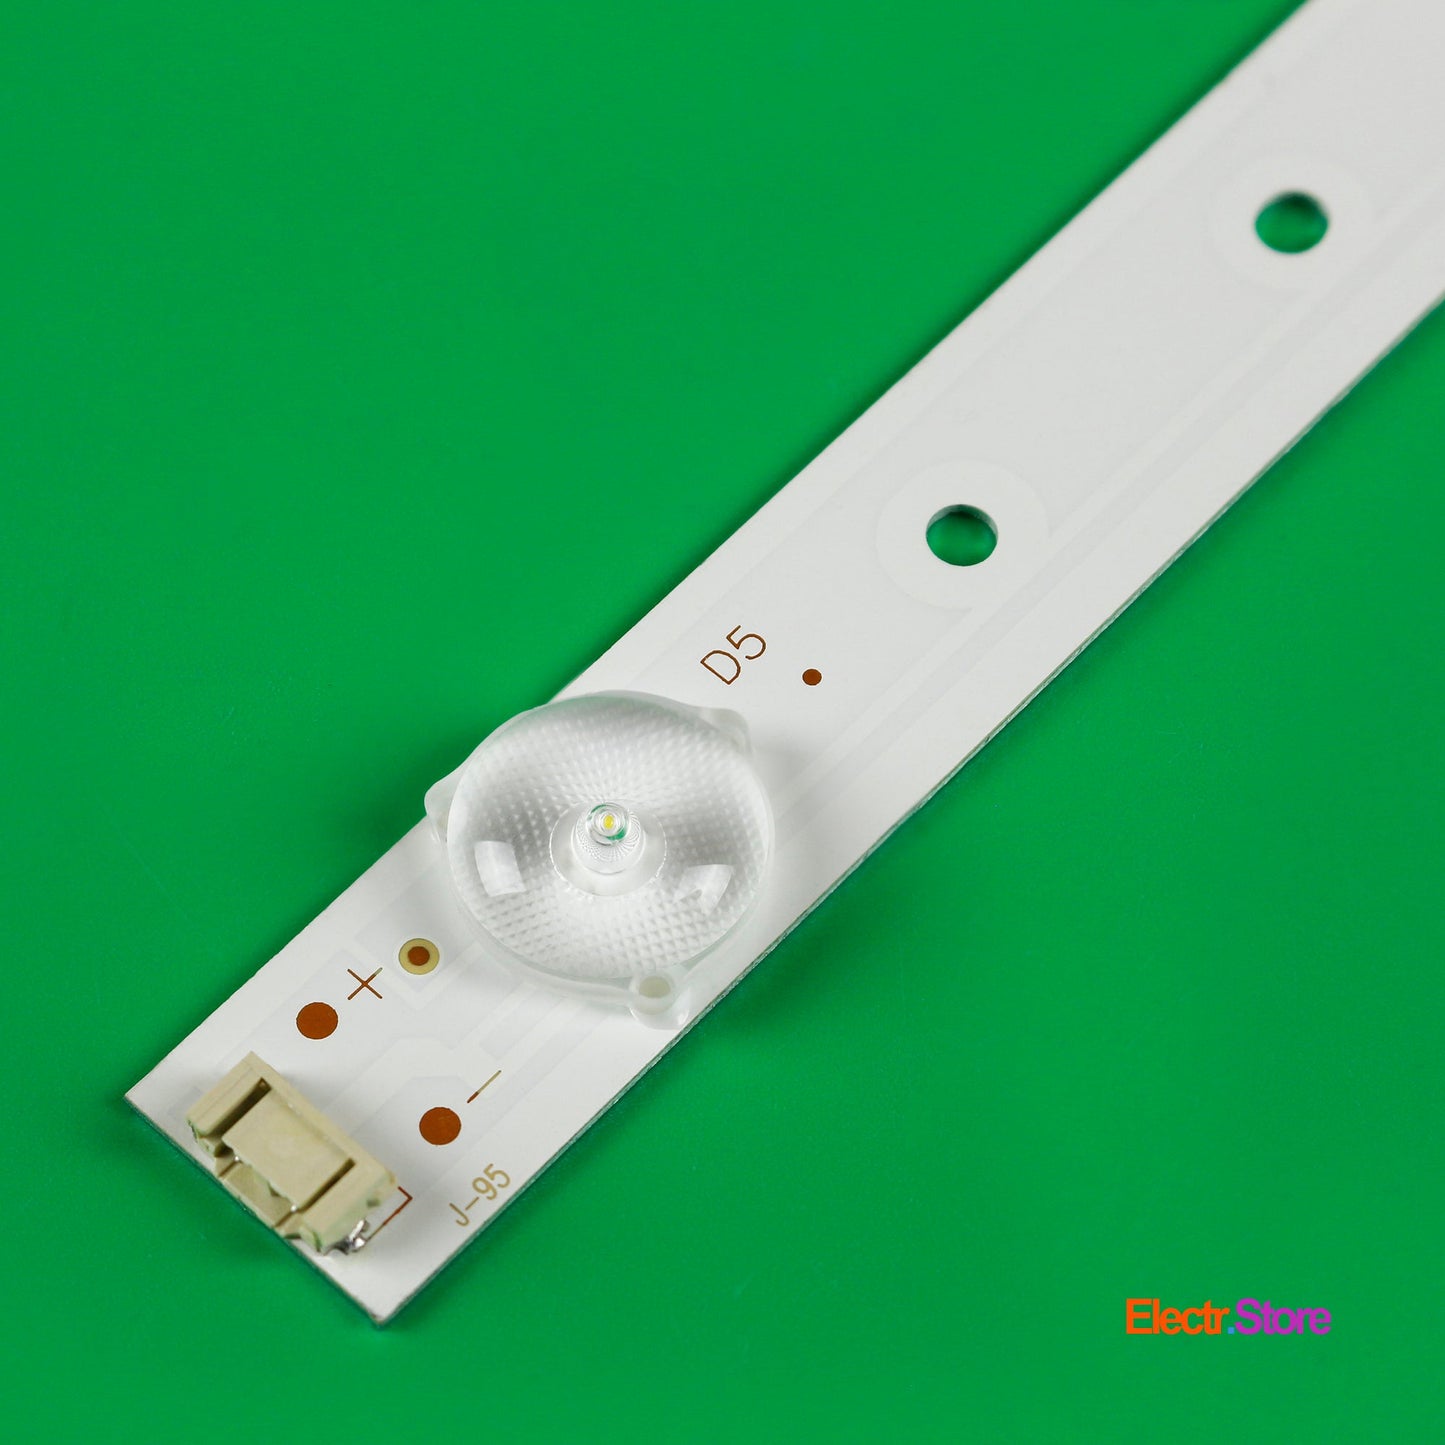 LED Backlight Strip Kits, 5800-W43001-3P00, 5800-W43001-5P00 (8 pcs/kit), for TV 42", 43" PANEL: RDL430FY 42"43" 5800-W43001-3P00 Erisson LED Backlights Polaroid Skyworth Electr.Store